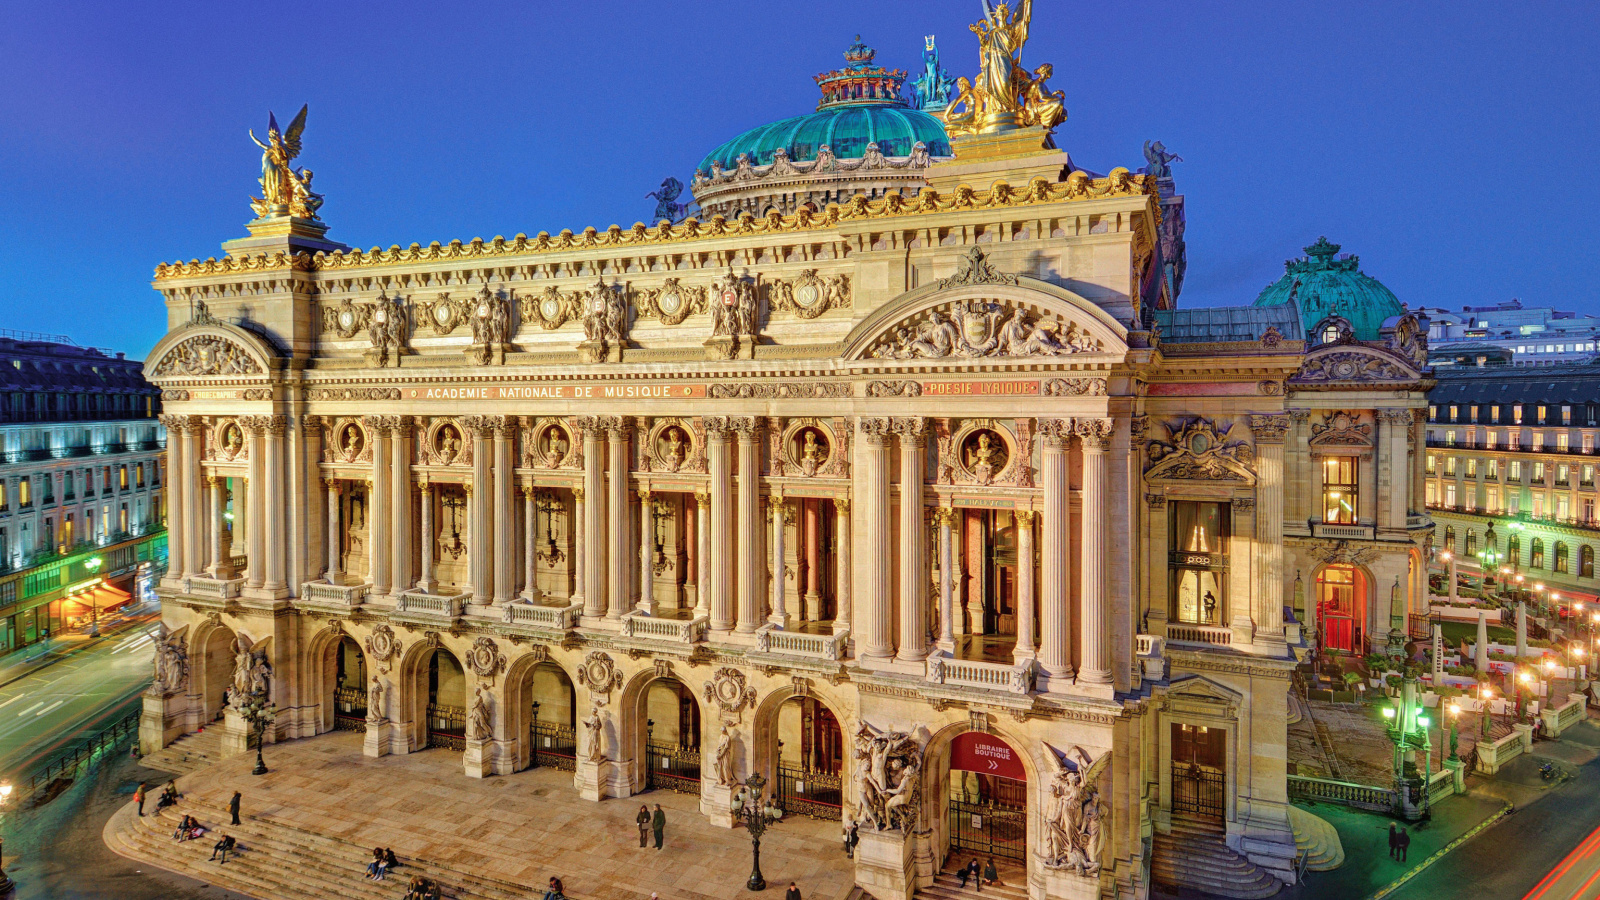 Palais Garnier Opera Paris wallpaper 1600x900